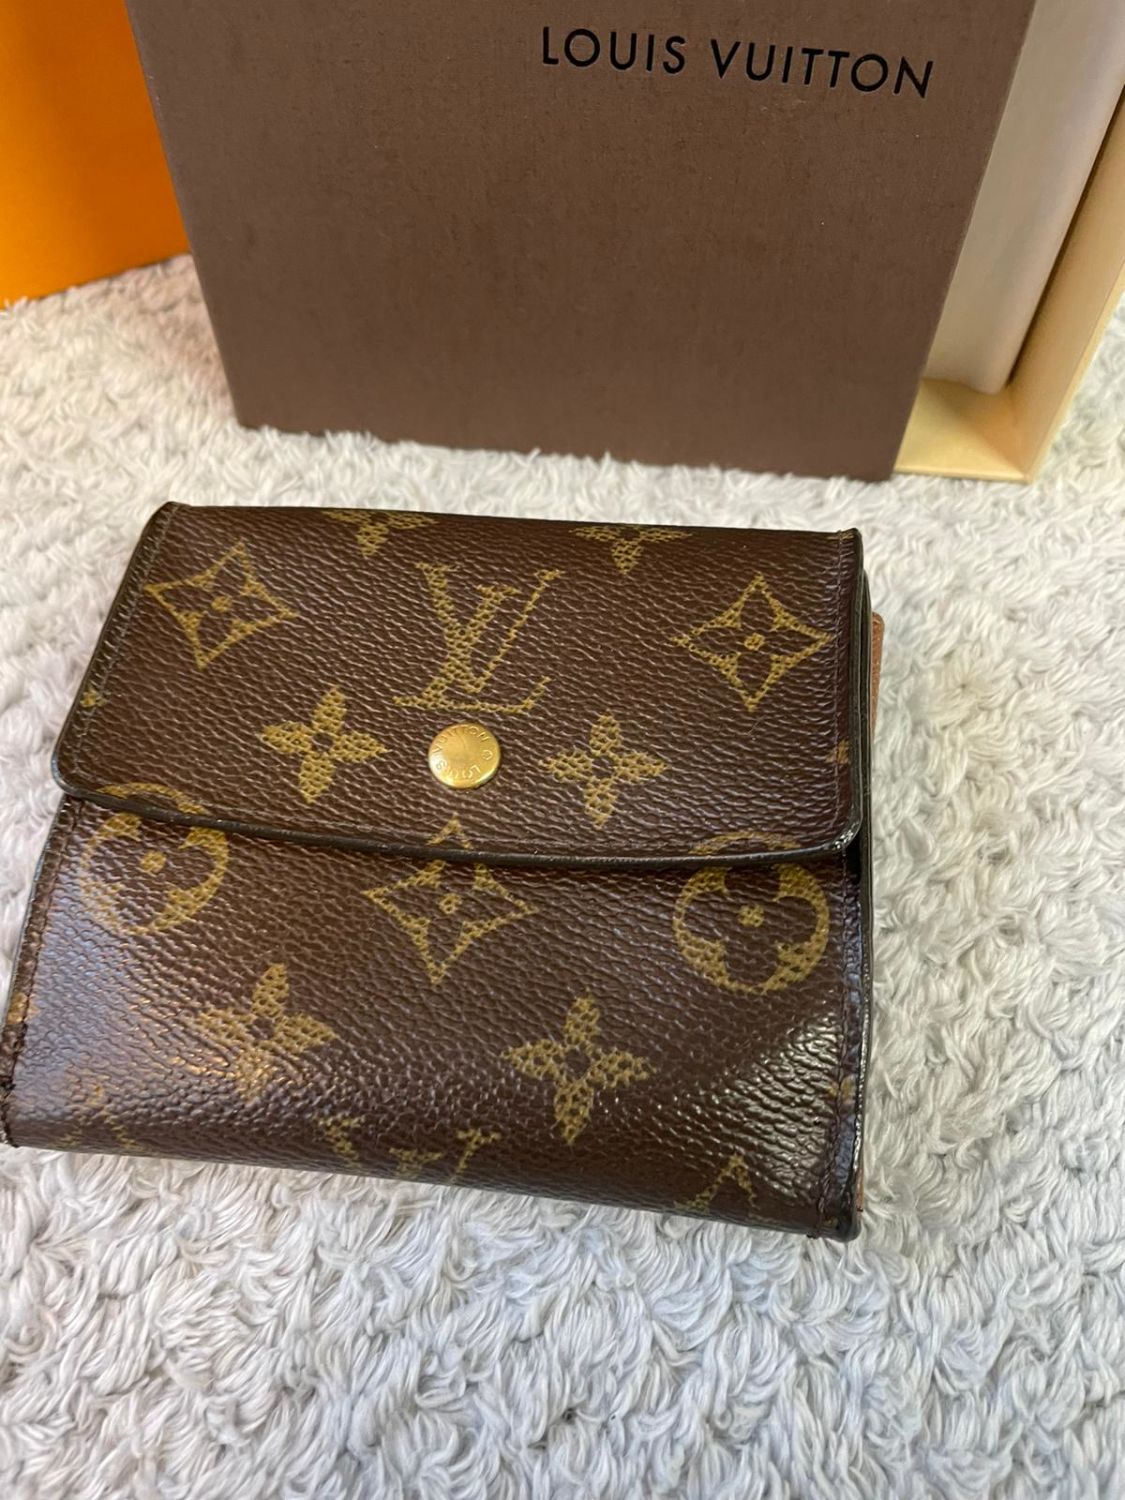 Louis Vuitton purse - Image 2 of 5